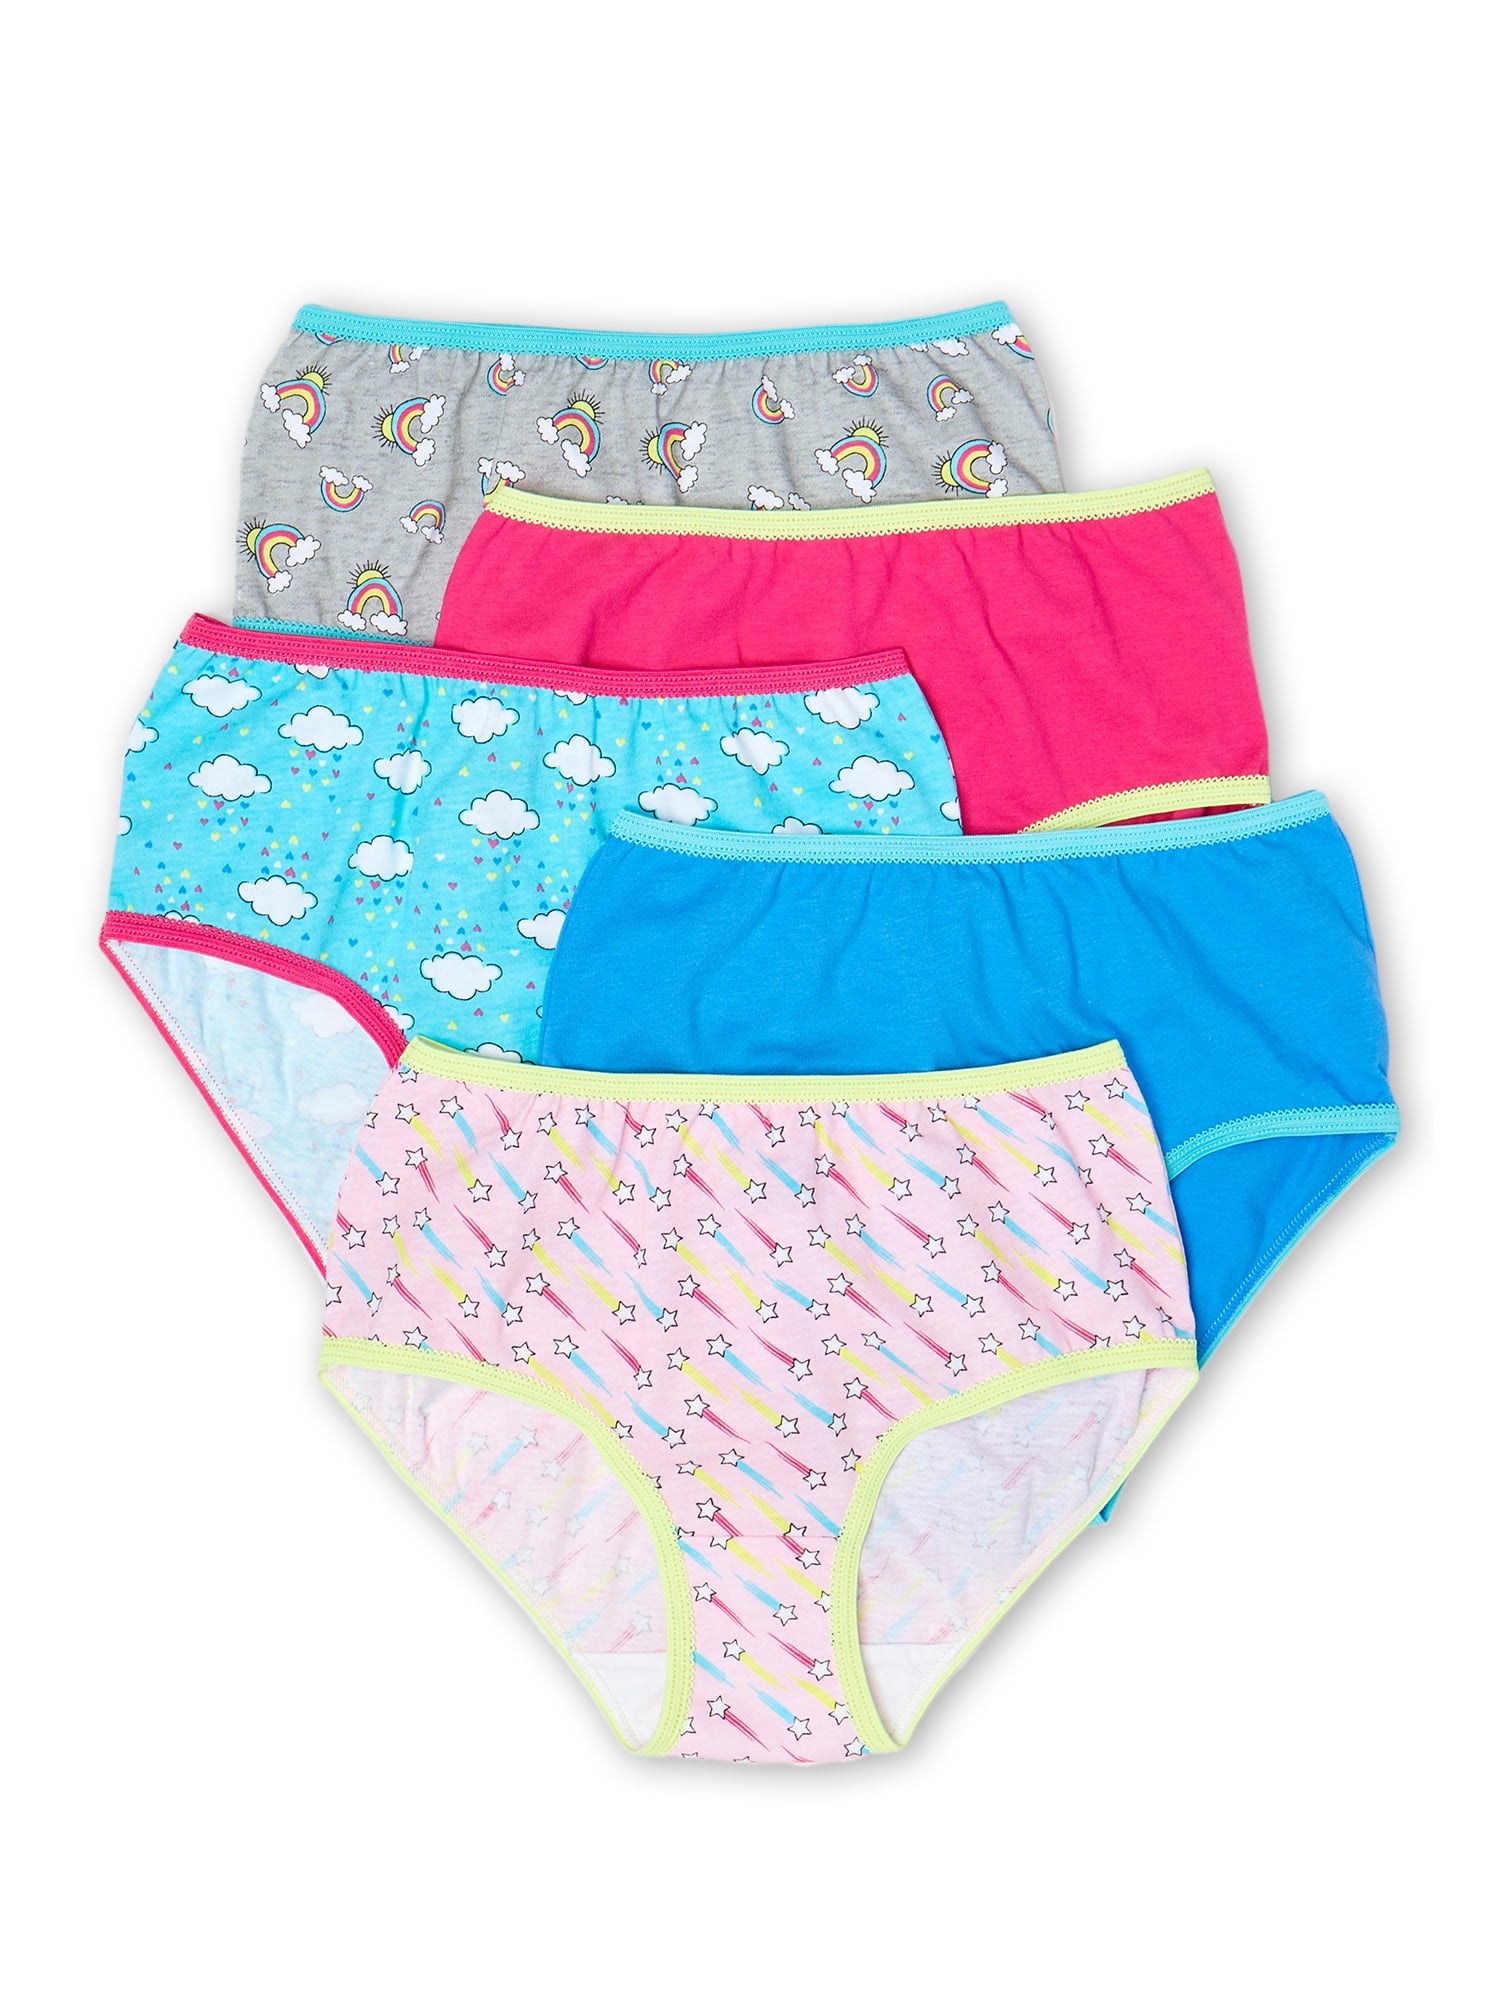 Wonder Nation Girls Brief Underwear 20-Pack, Sizes 4-18 